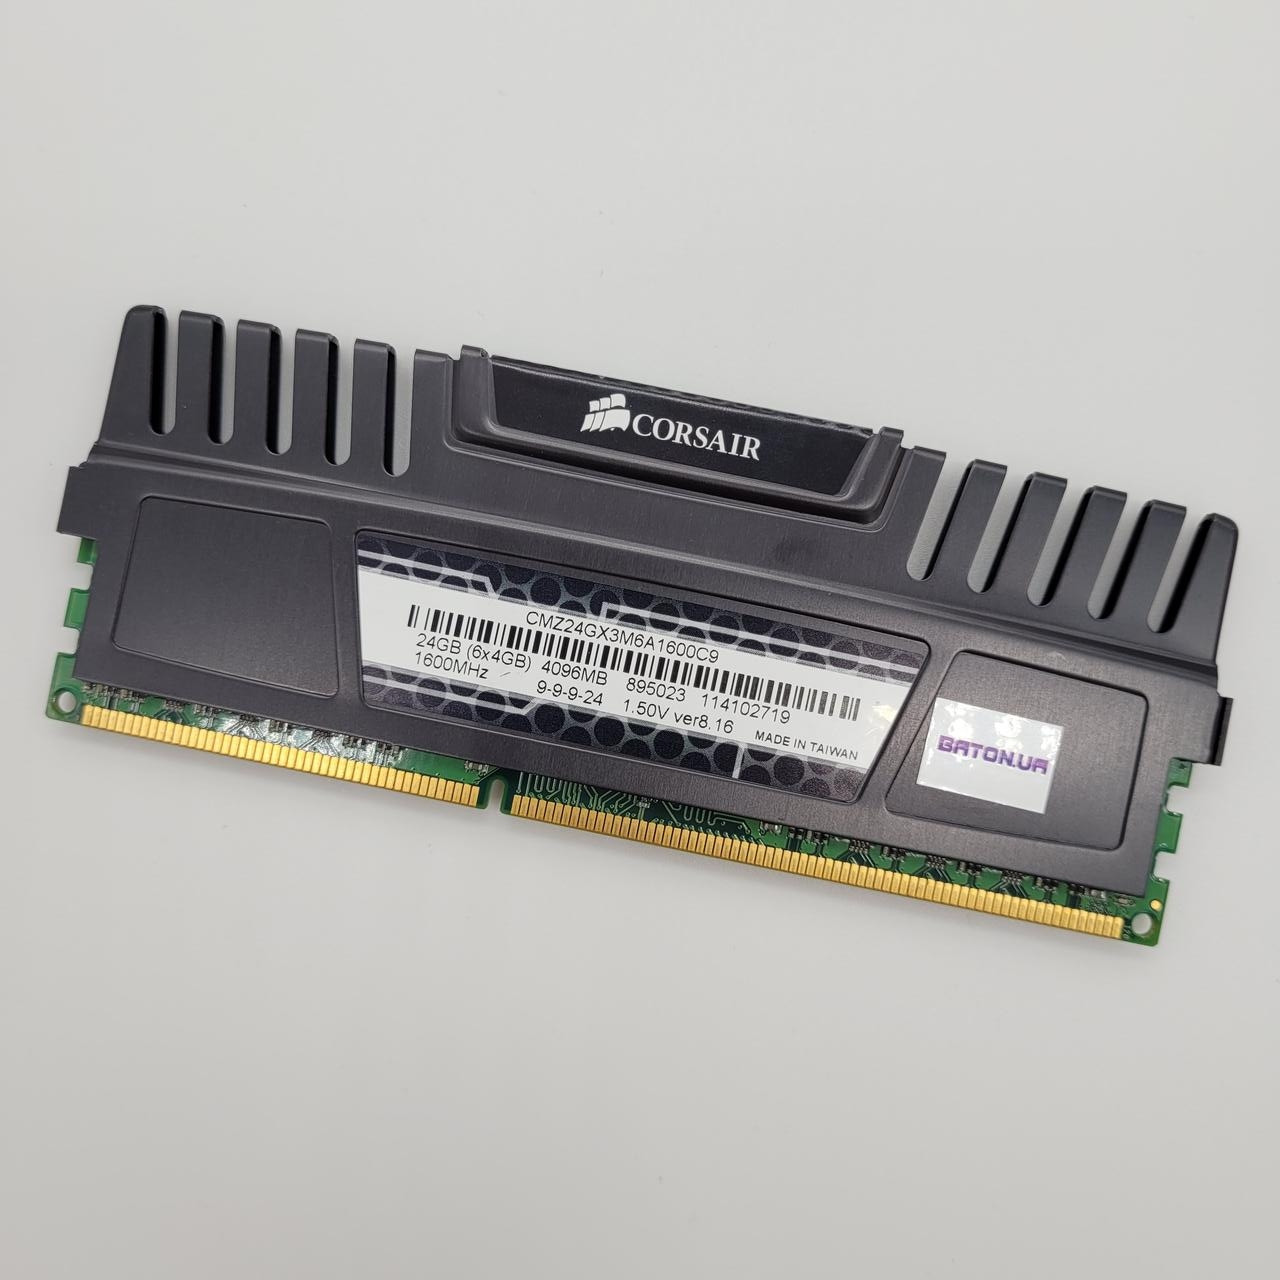 Ігрова оперативна пам'ять Corsair DDR3 4Gb 1600MHz PC3 12800U 2R8 CL9 (CMZ24GX3M6A1600C9) Б/У, фото 1